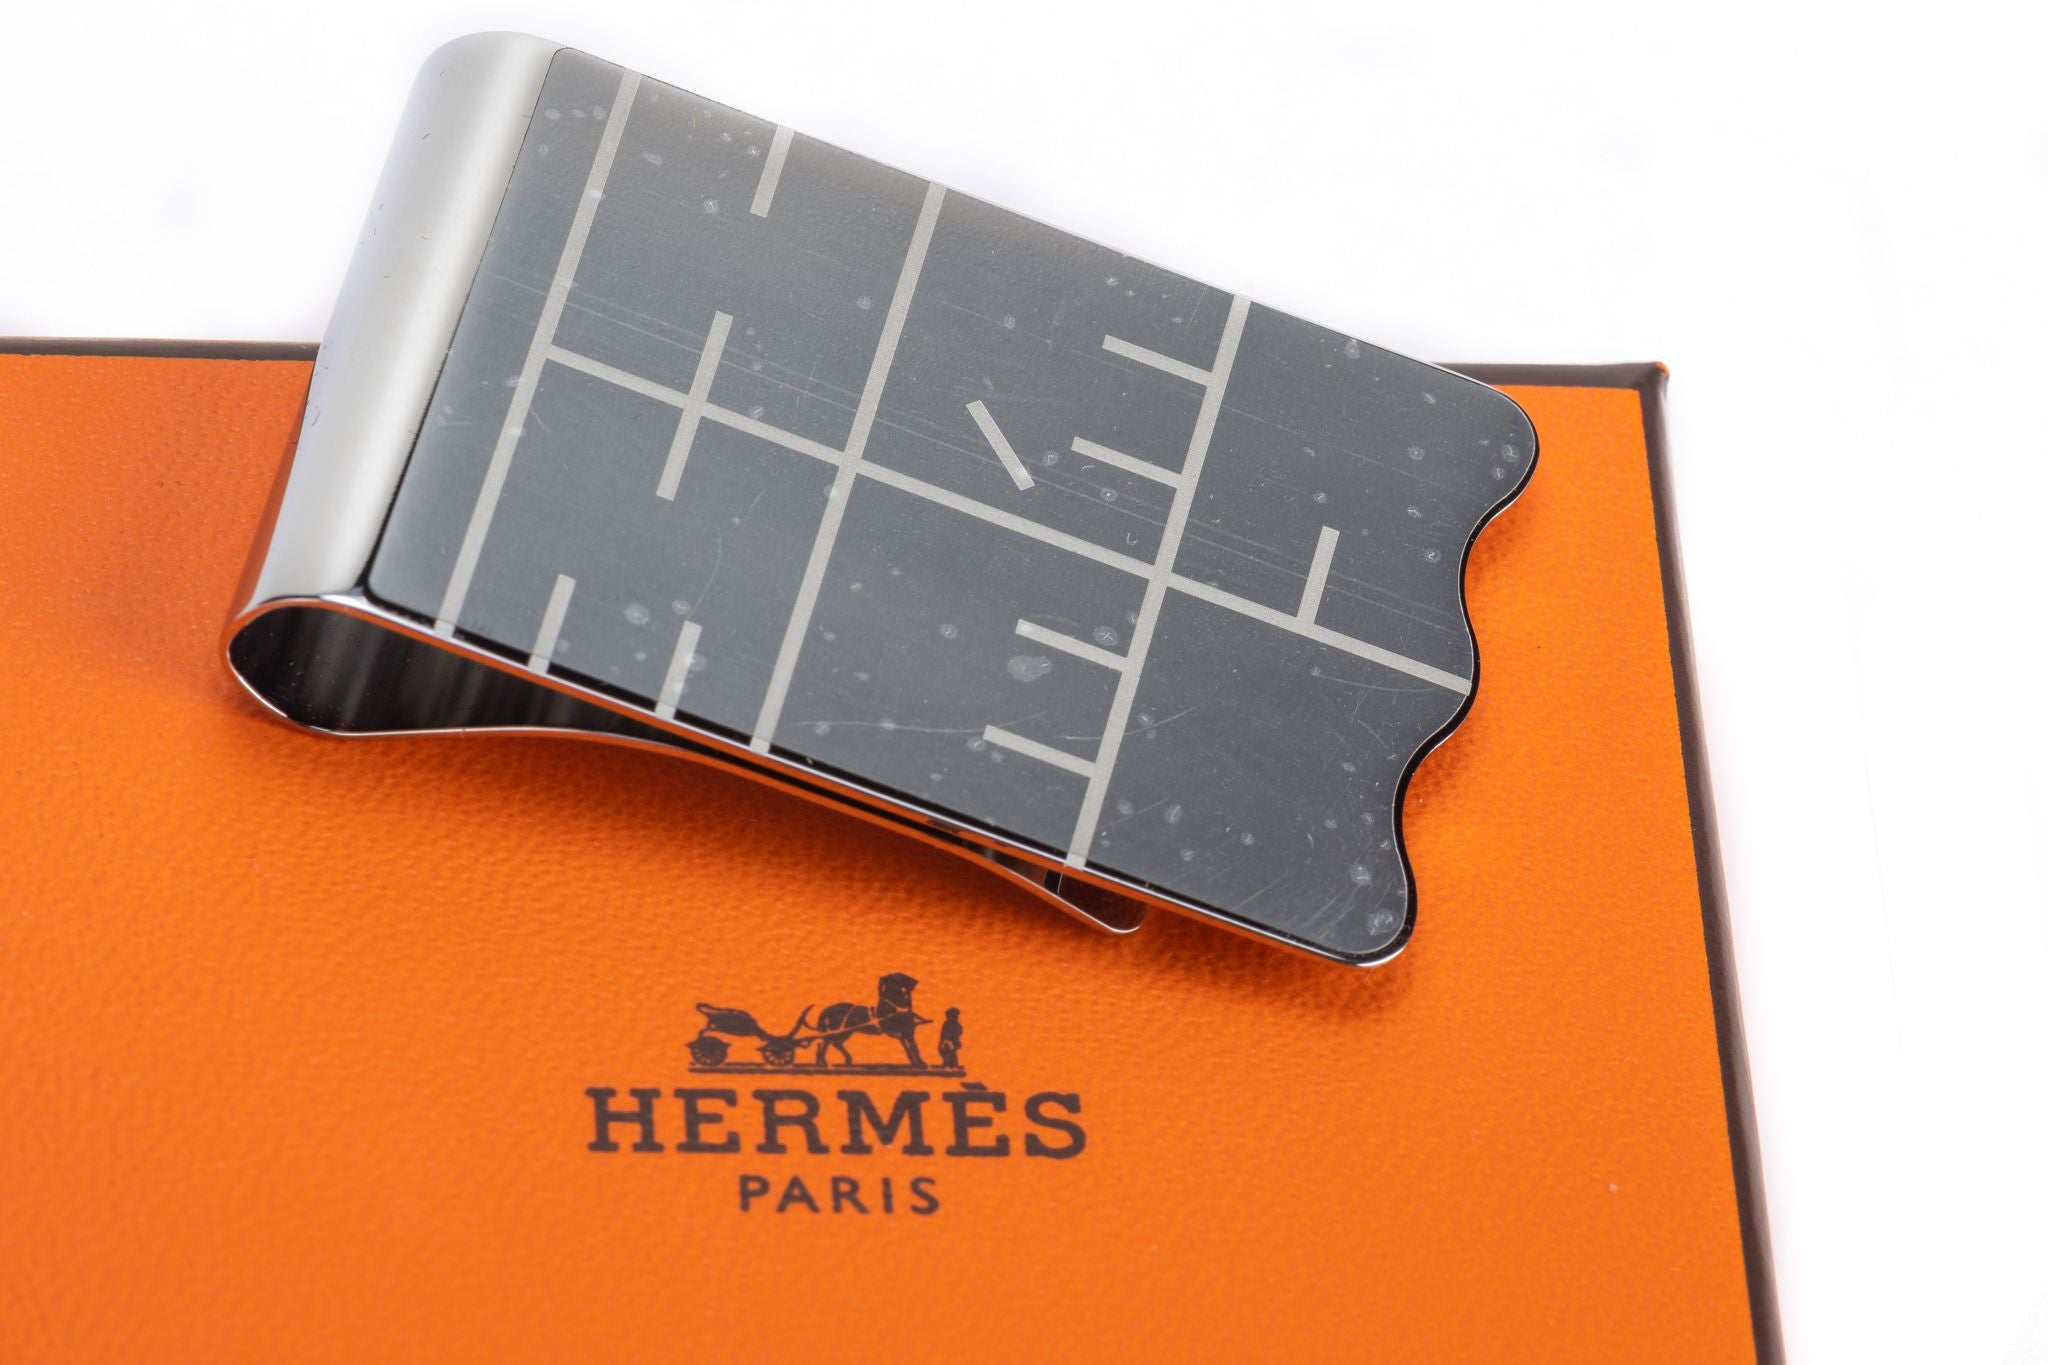 Hermes BNIB Palladium Money Clip - Vintage Lux